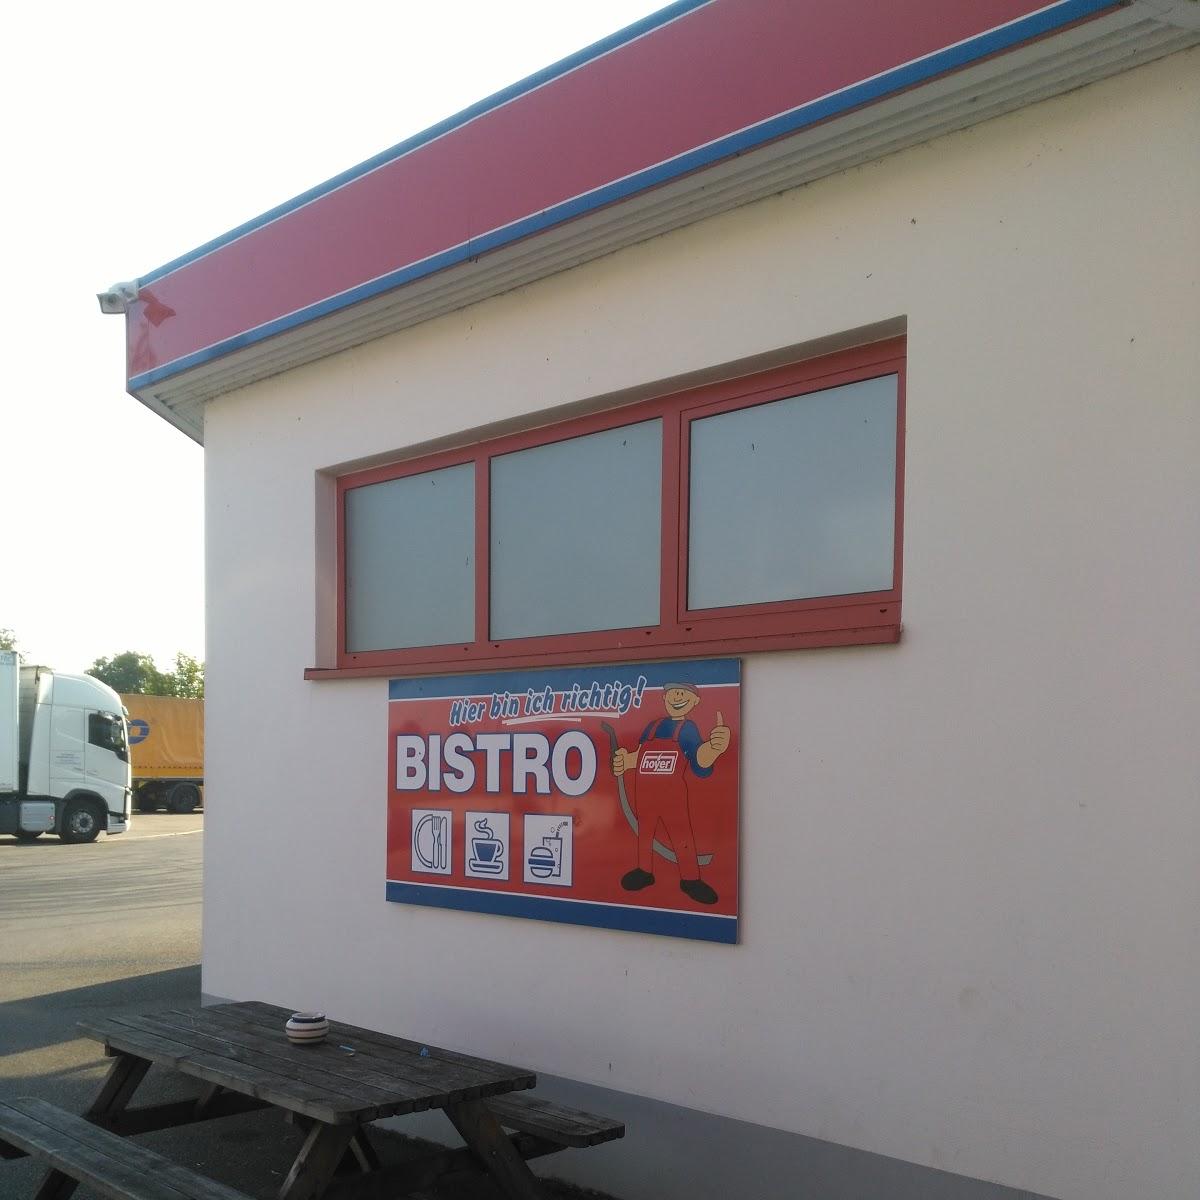 Restaurant "Bistro Hoyer" in  Dargun